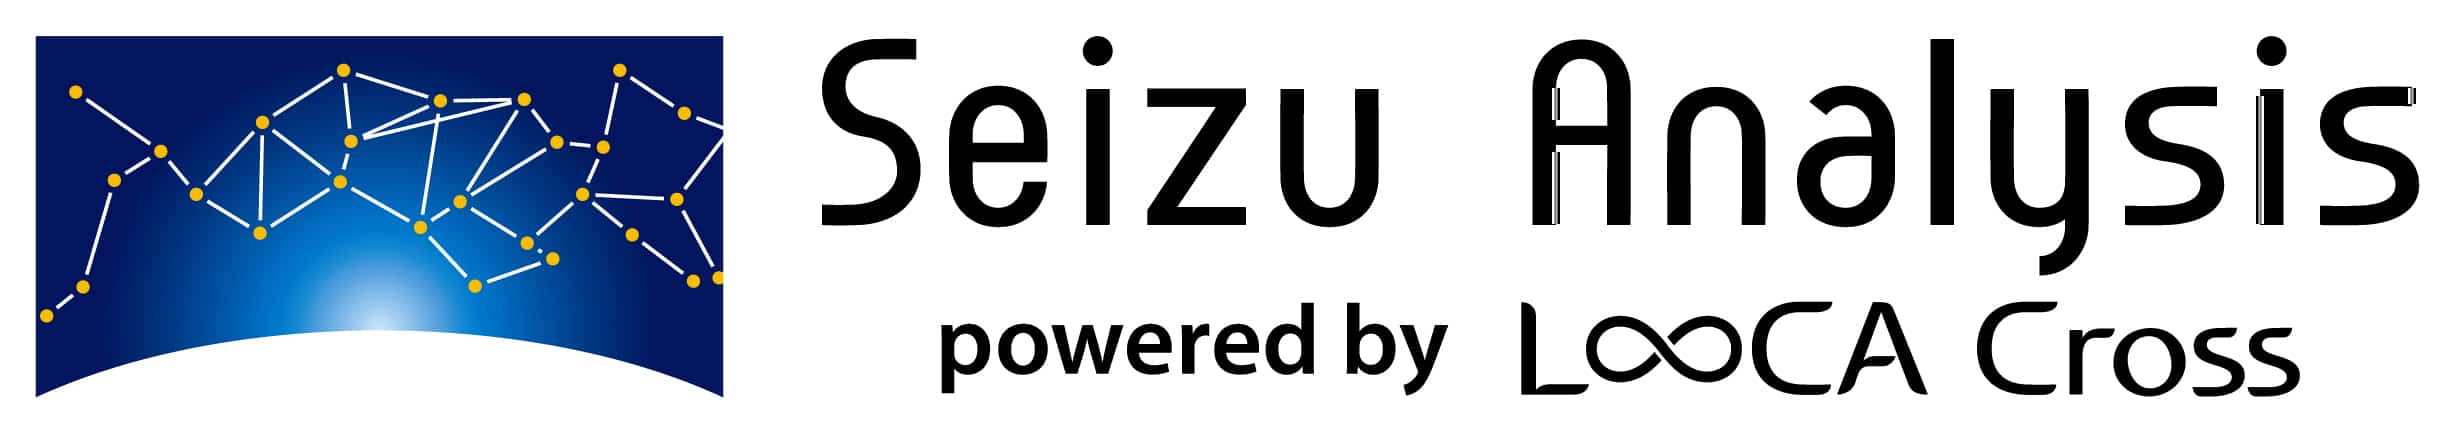 seizu_logo_002